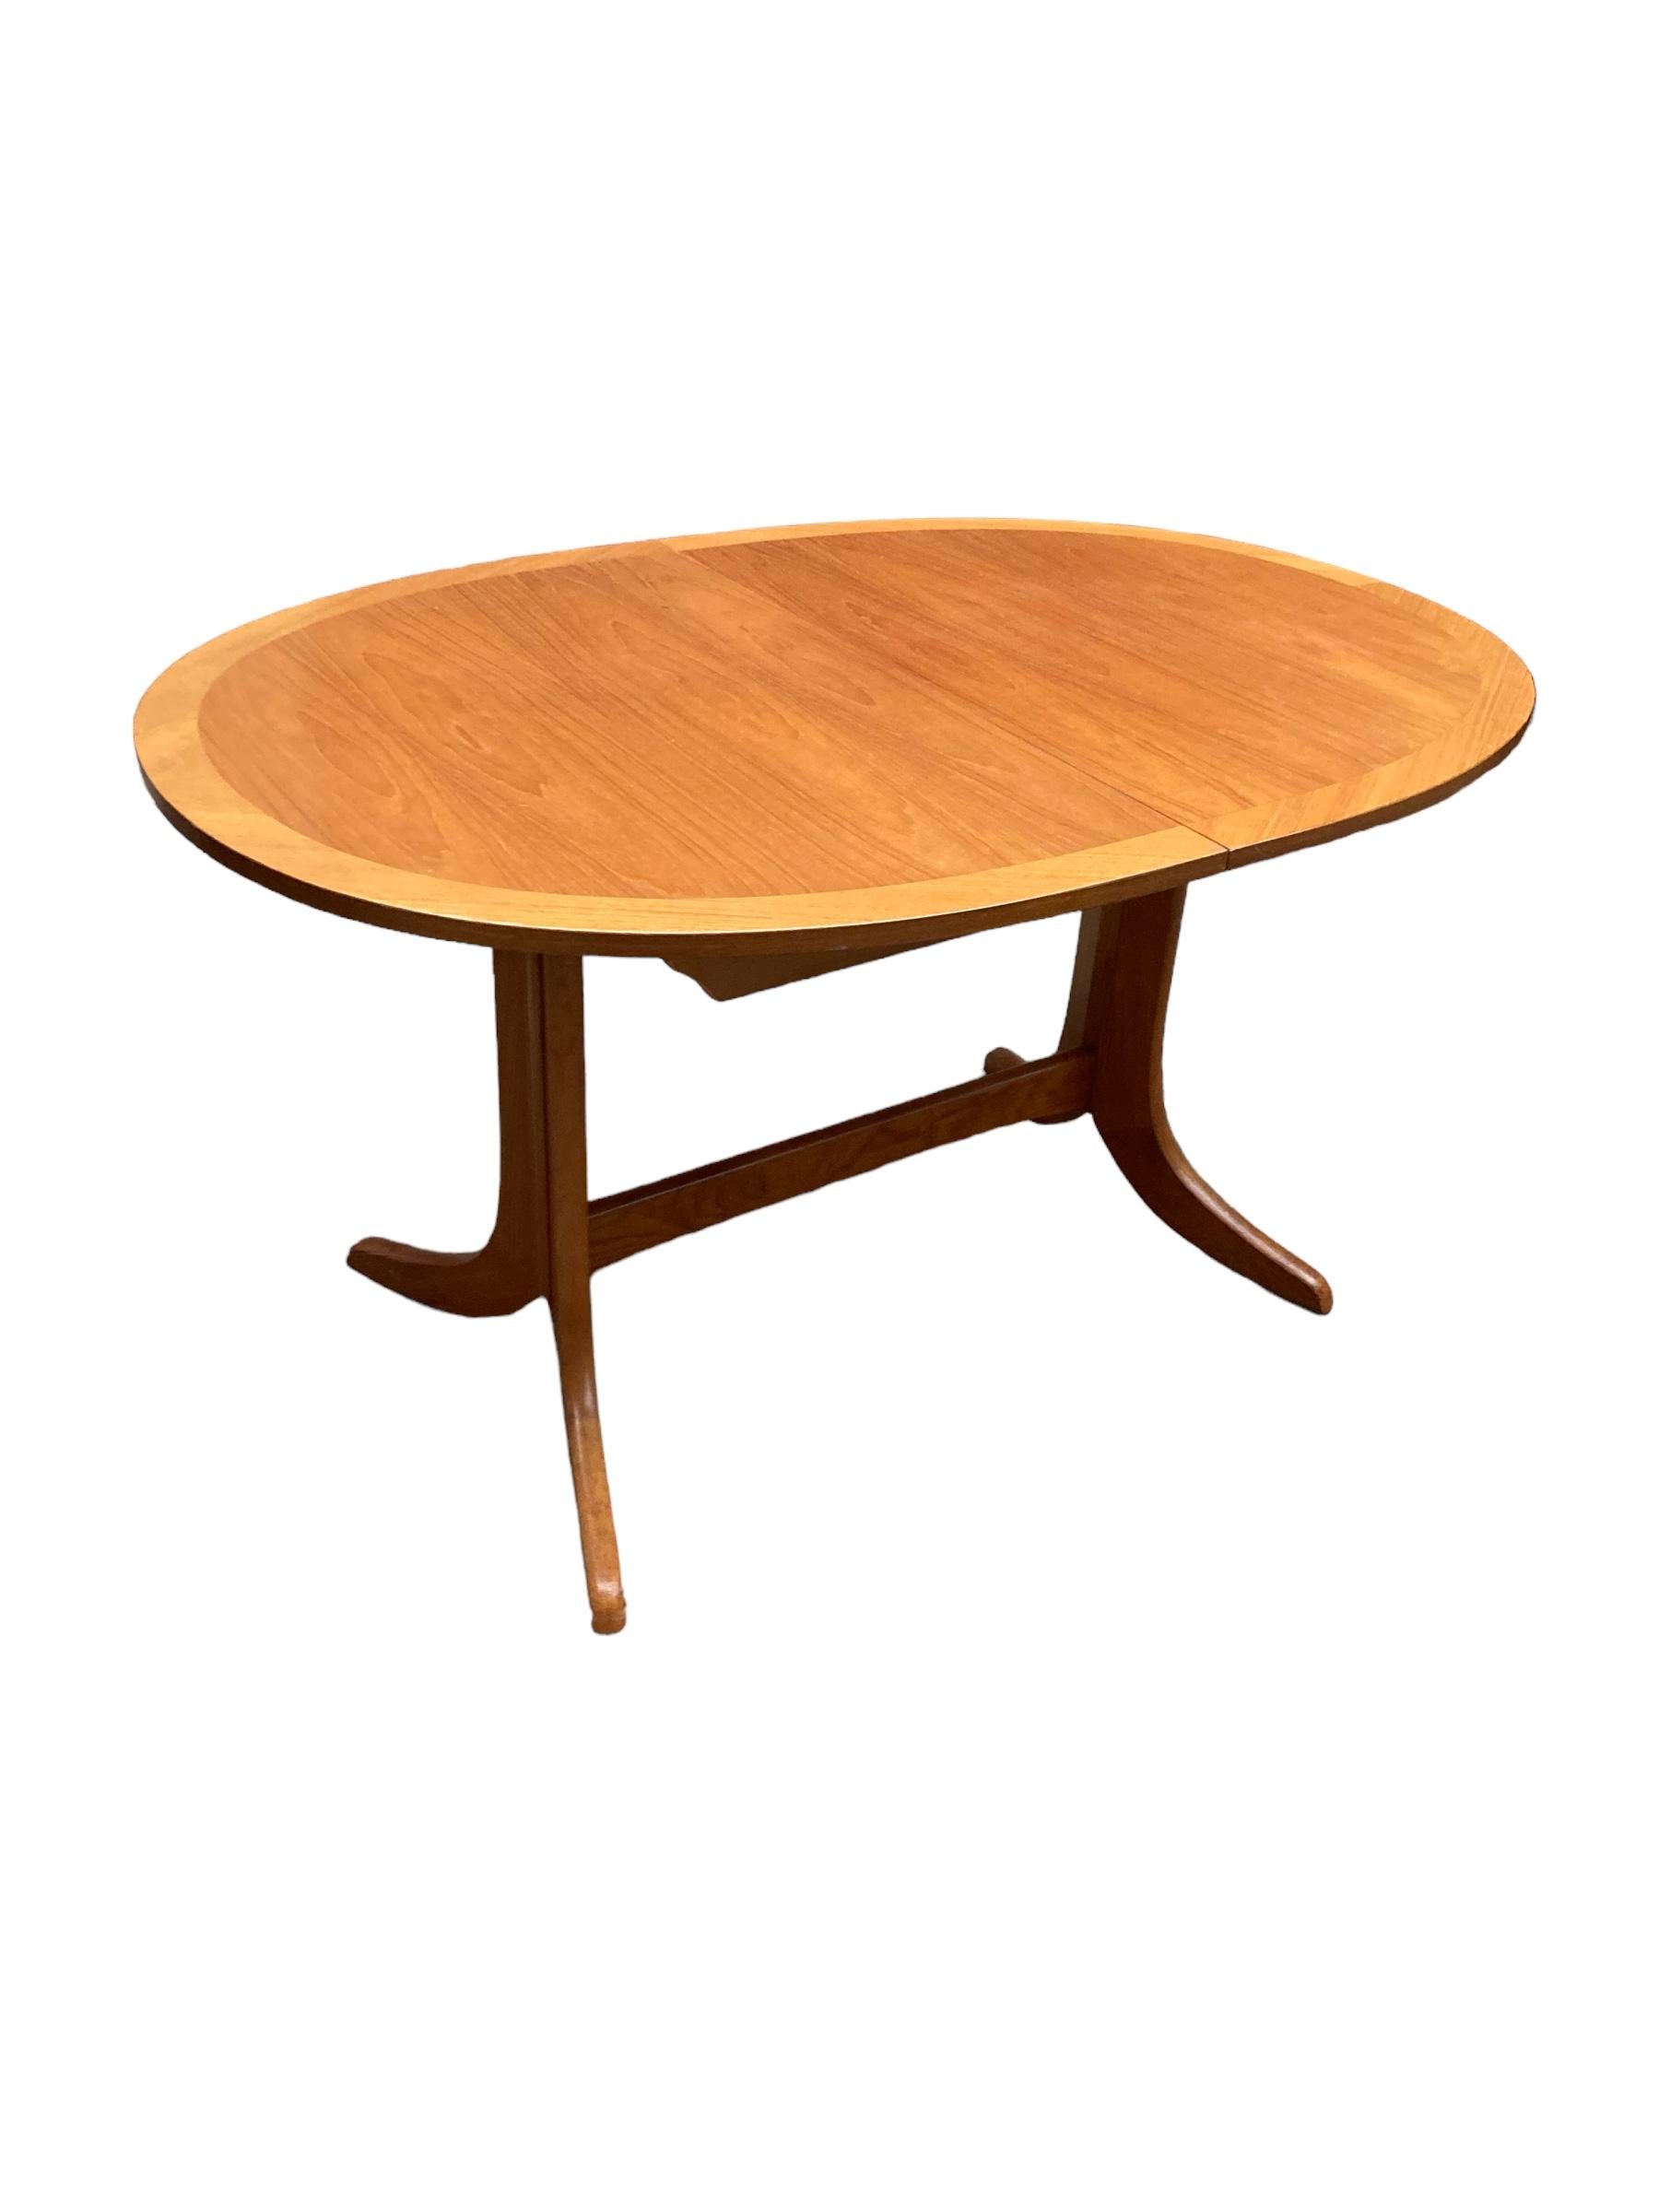 Voici notre exquise table de salle à manger ovale extensible avec un plateau en teck magnifiquement travaillé. Ce meuble élégant est conçu pour améliorer tout espace de repas grâce à son attrait intemporel et à ses dimensions généreuses. Le plateau